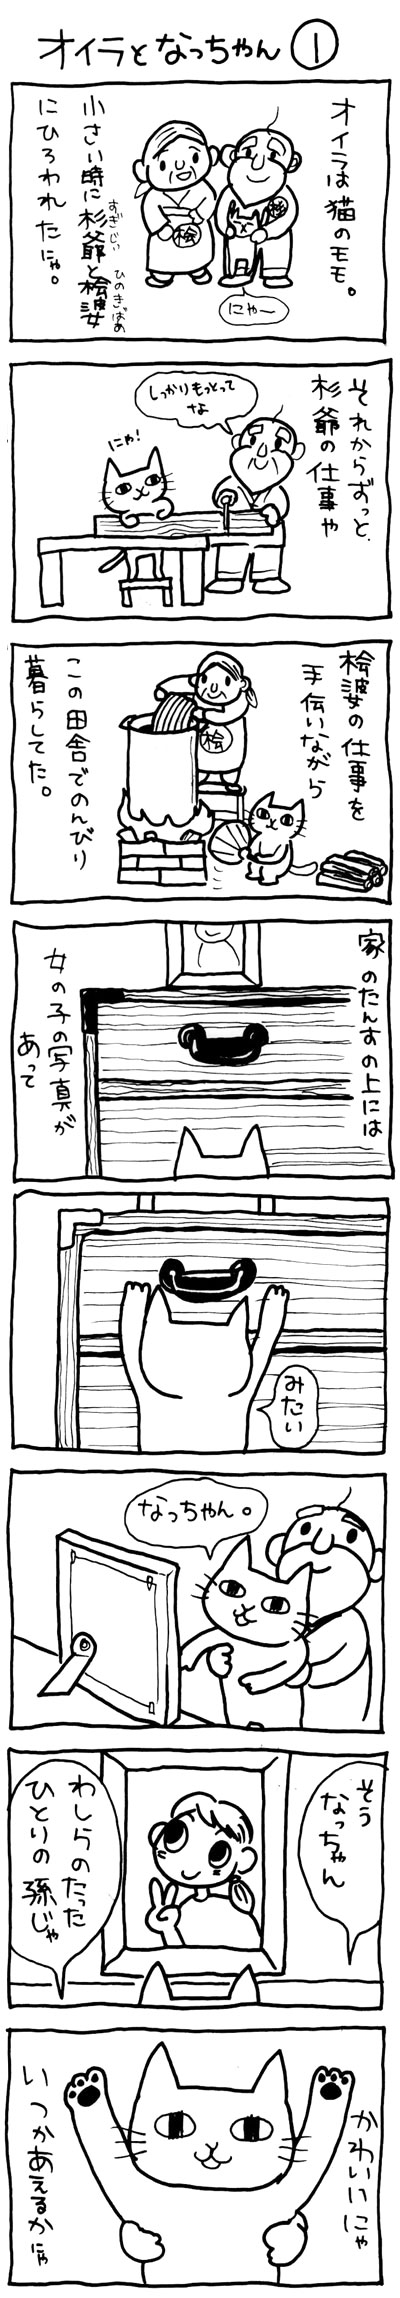 木工漫画pro01